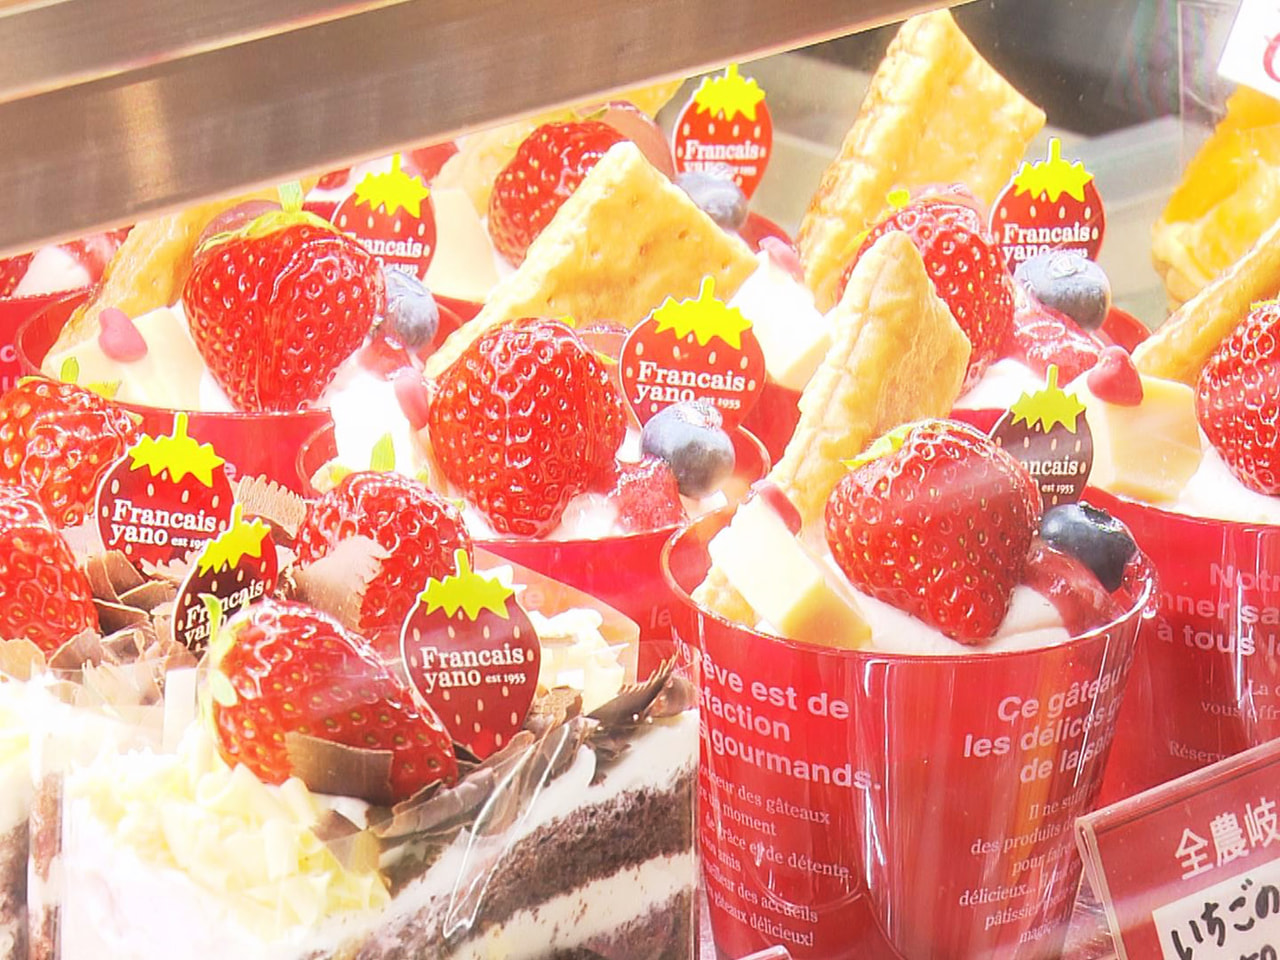 岐阜市の洋菓子店で県産いちごを使ったスイーツが並ぶ「いちごフェア」が開催されてい...